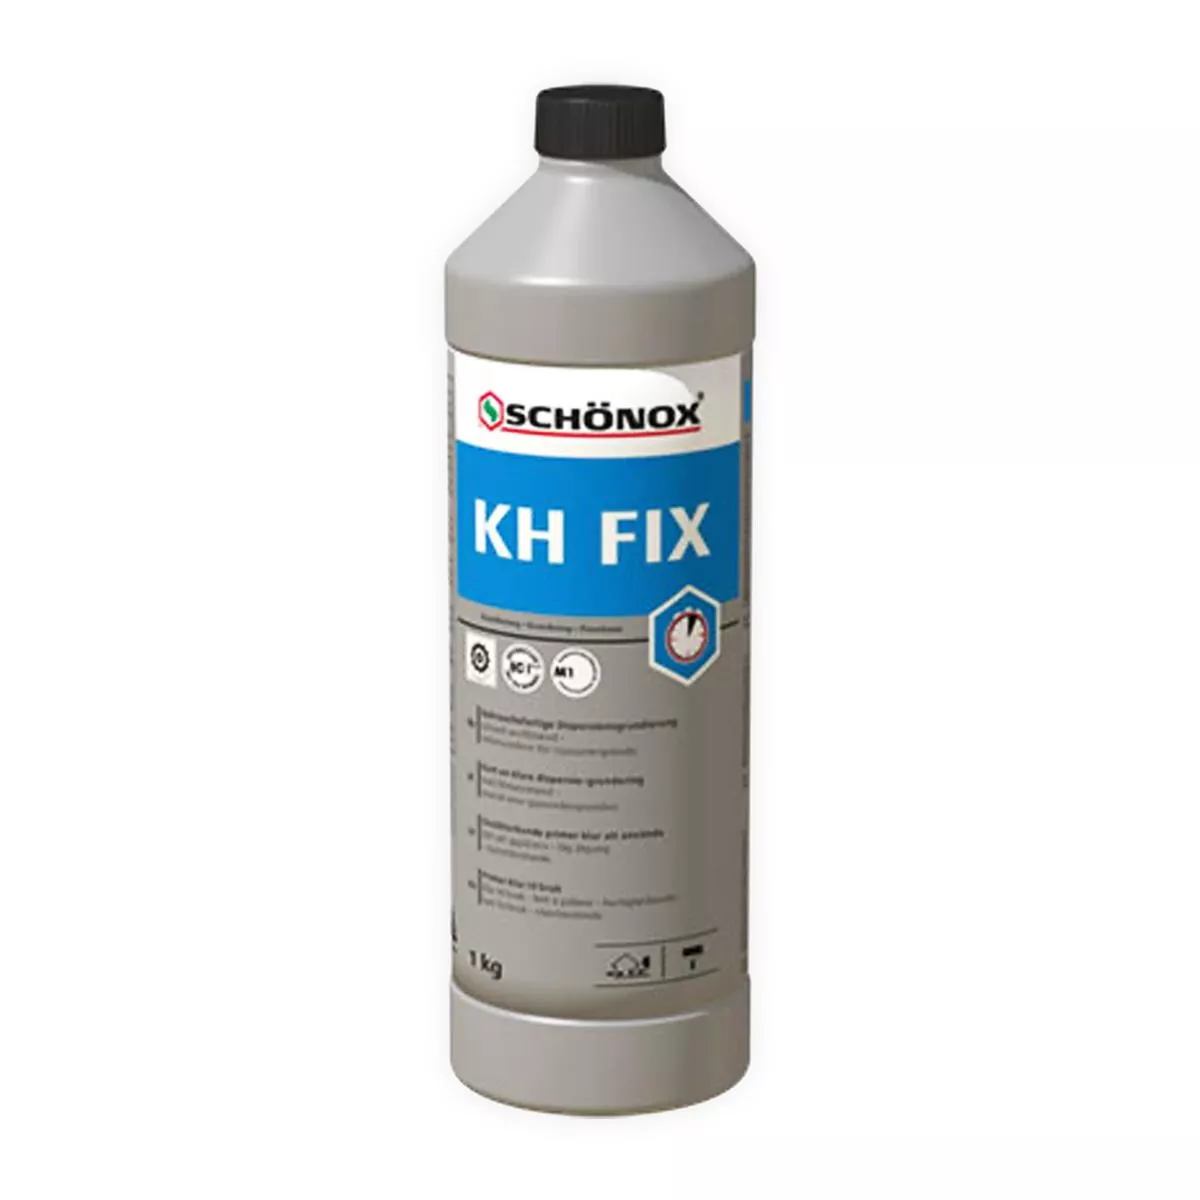 Základní nátěr Připravený k použití Schönox KH FIX disperze lepidla ze syntetické pryskyřice 1 kg